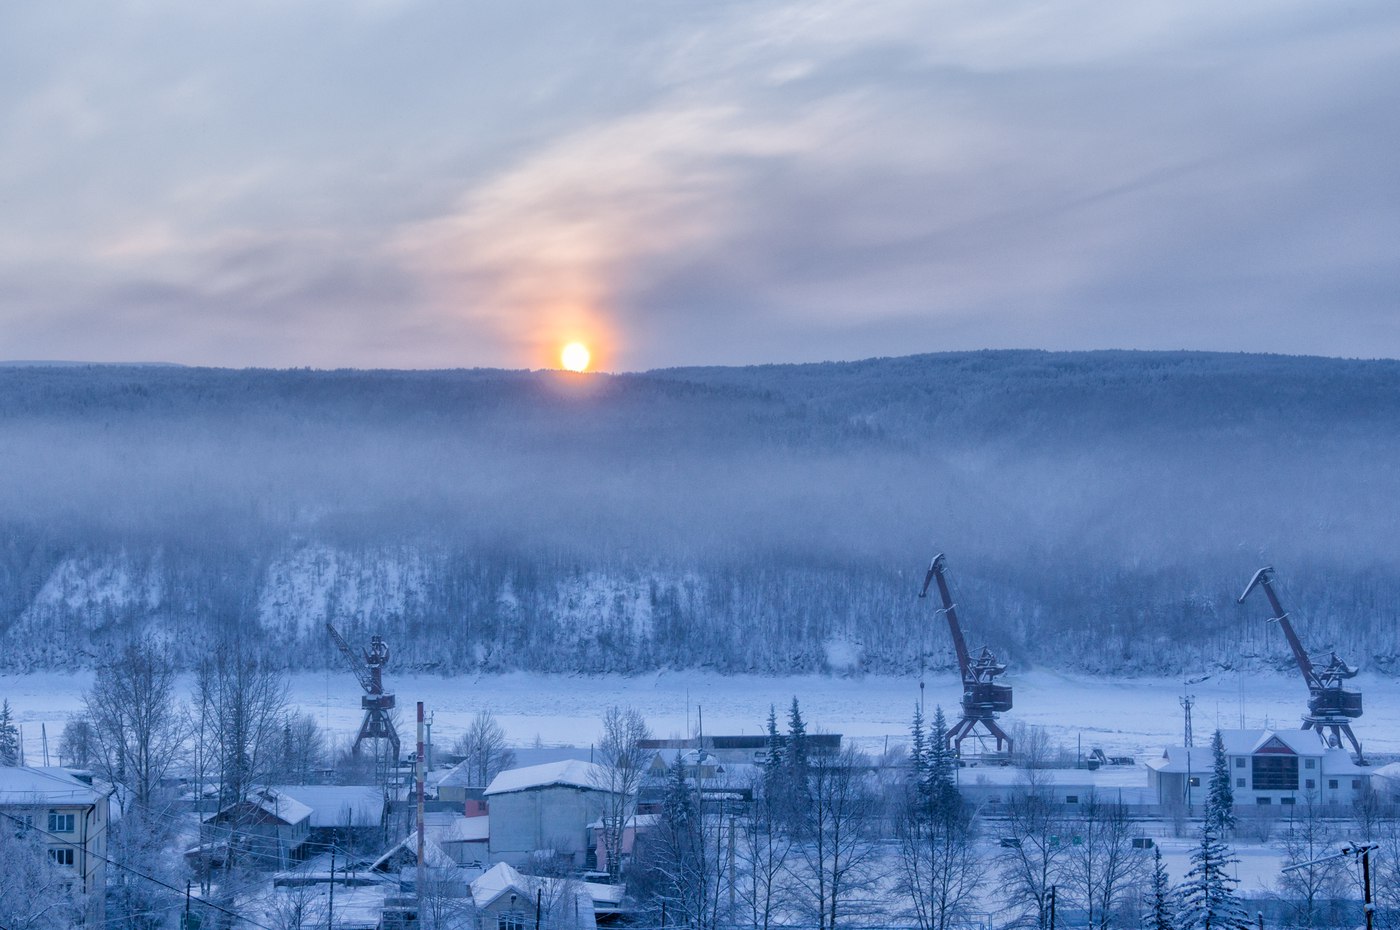 достопримечательности зима иркутская область